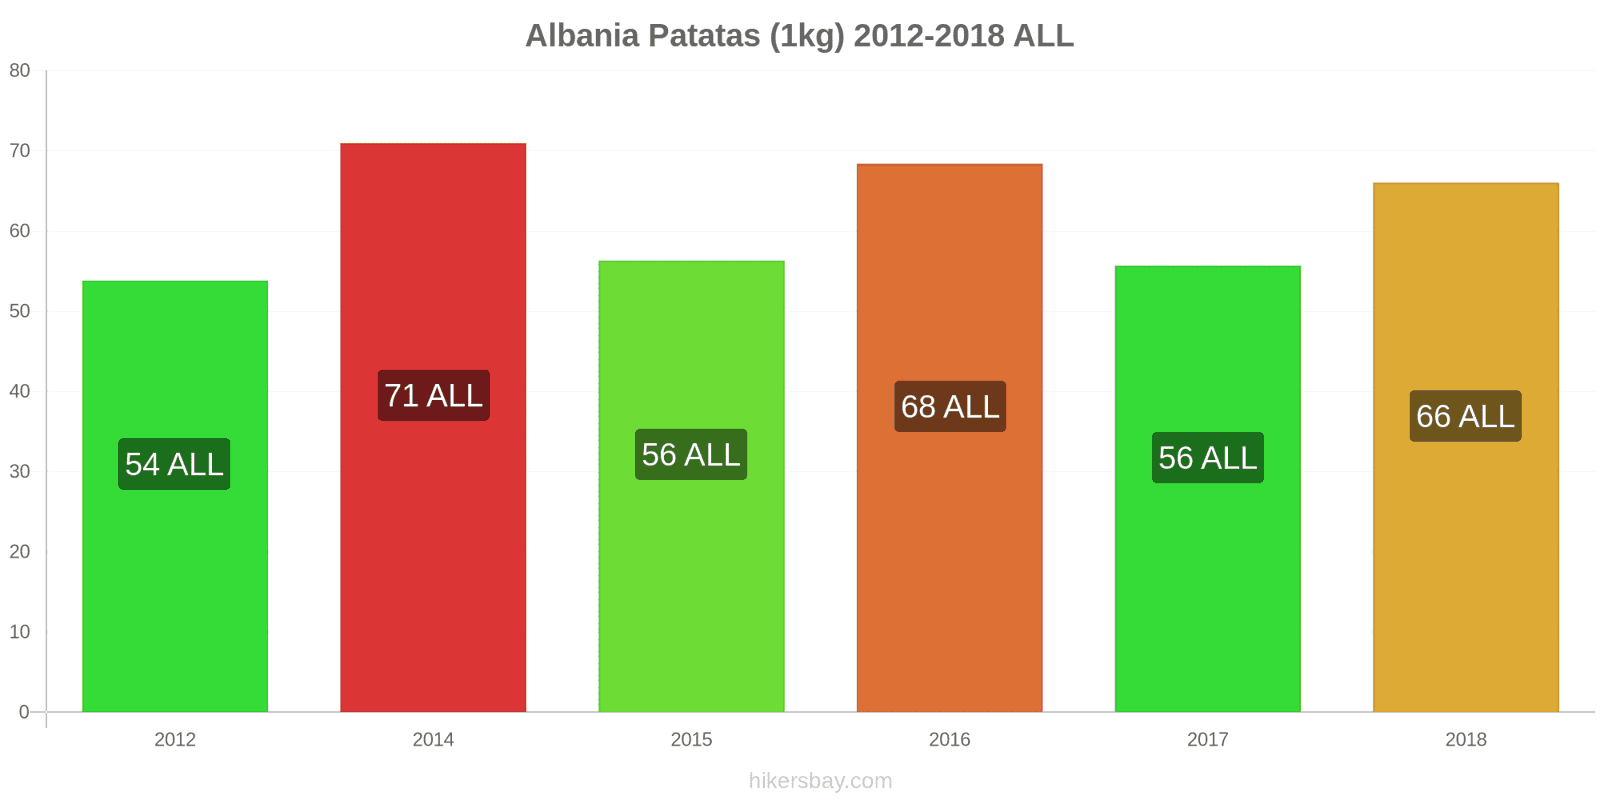 Albania cambios de precios Patatas (1kg) hikersbay.com